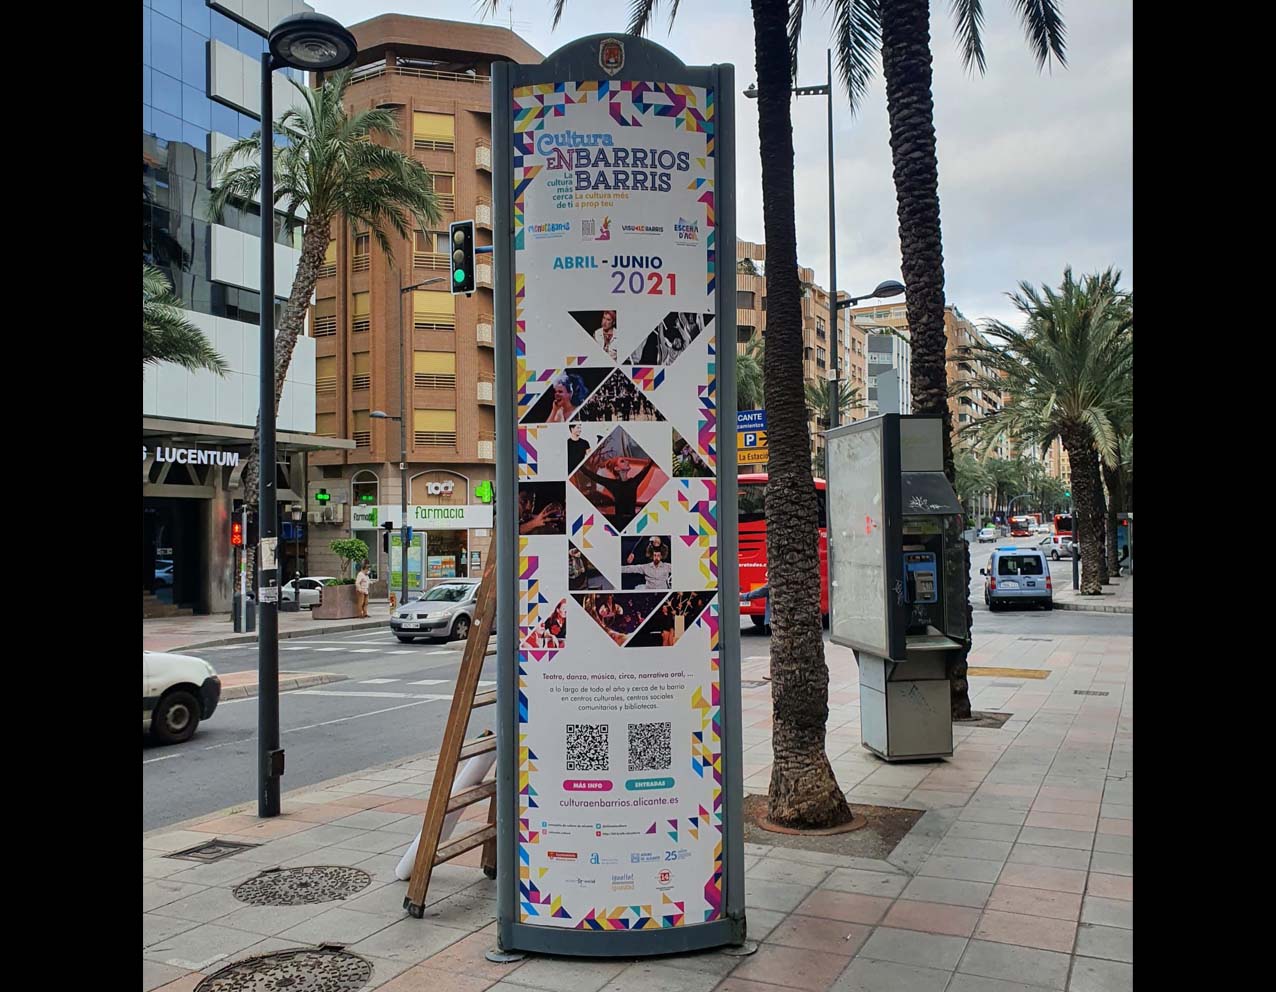 diseño grafico cartelería y campaña cultura en barrios alicante 2021 concejalía de cultura